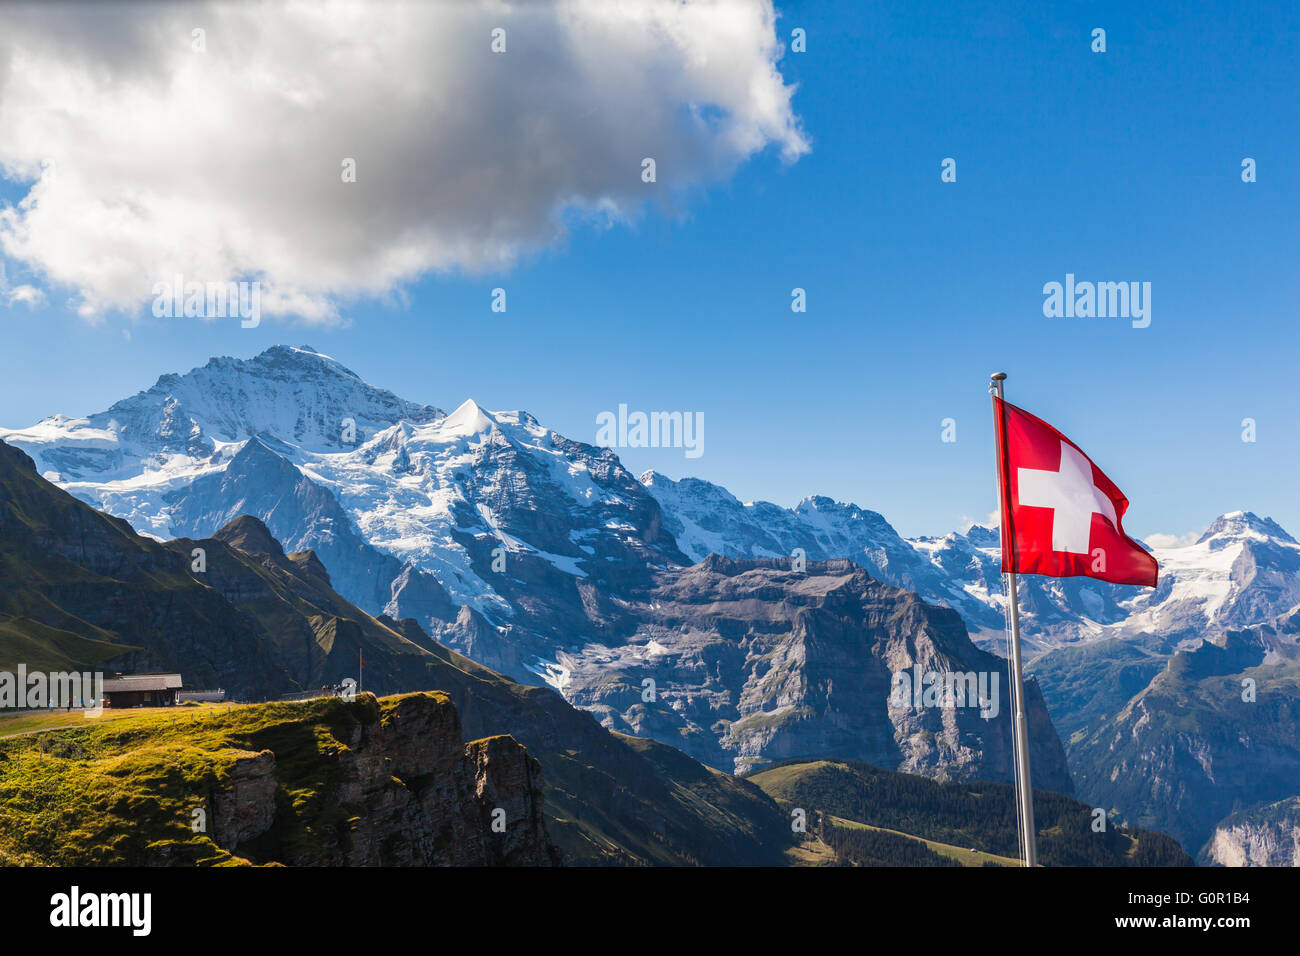 Splendida vista della Jungfrau e la catena montuosa delle Alpi Bernesi da Mannlichen stazione della funivia, Svizzera. Foto Stock